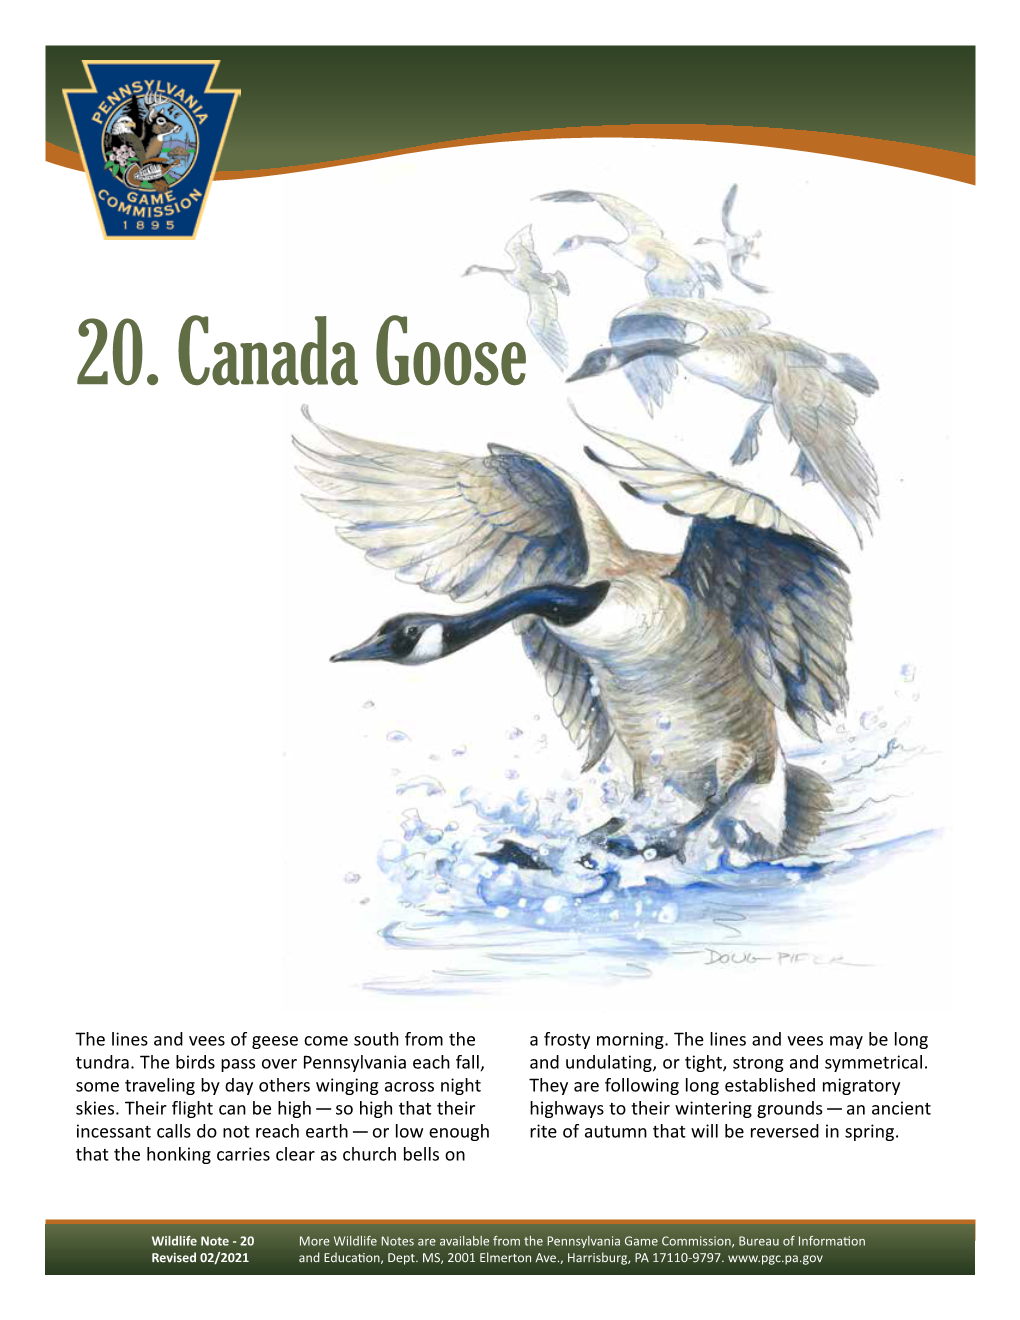 Canada Goose Wildlife Note